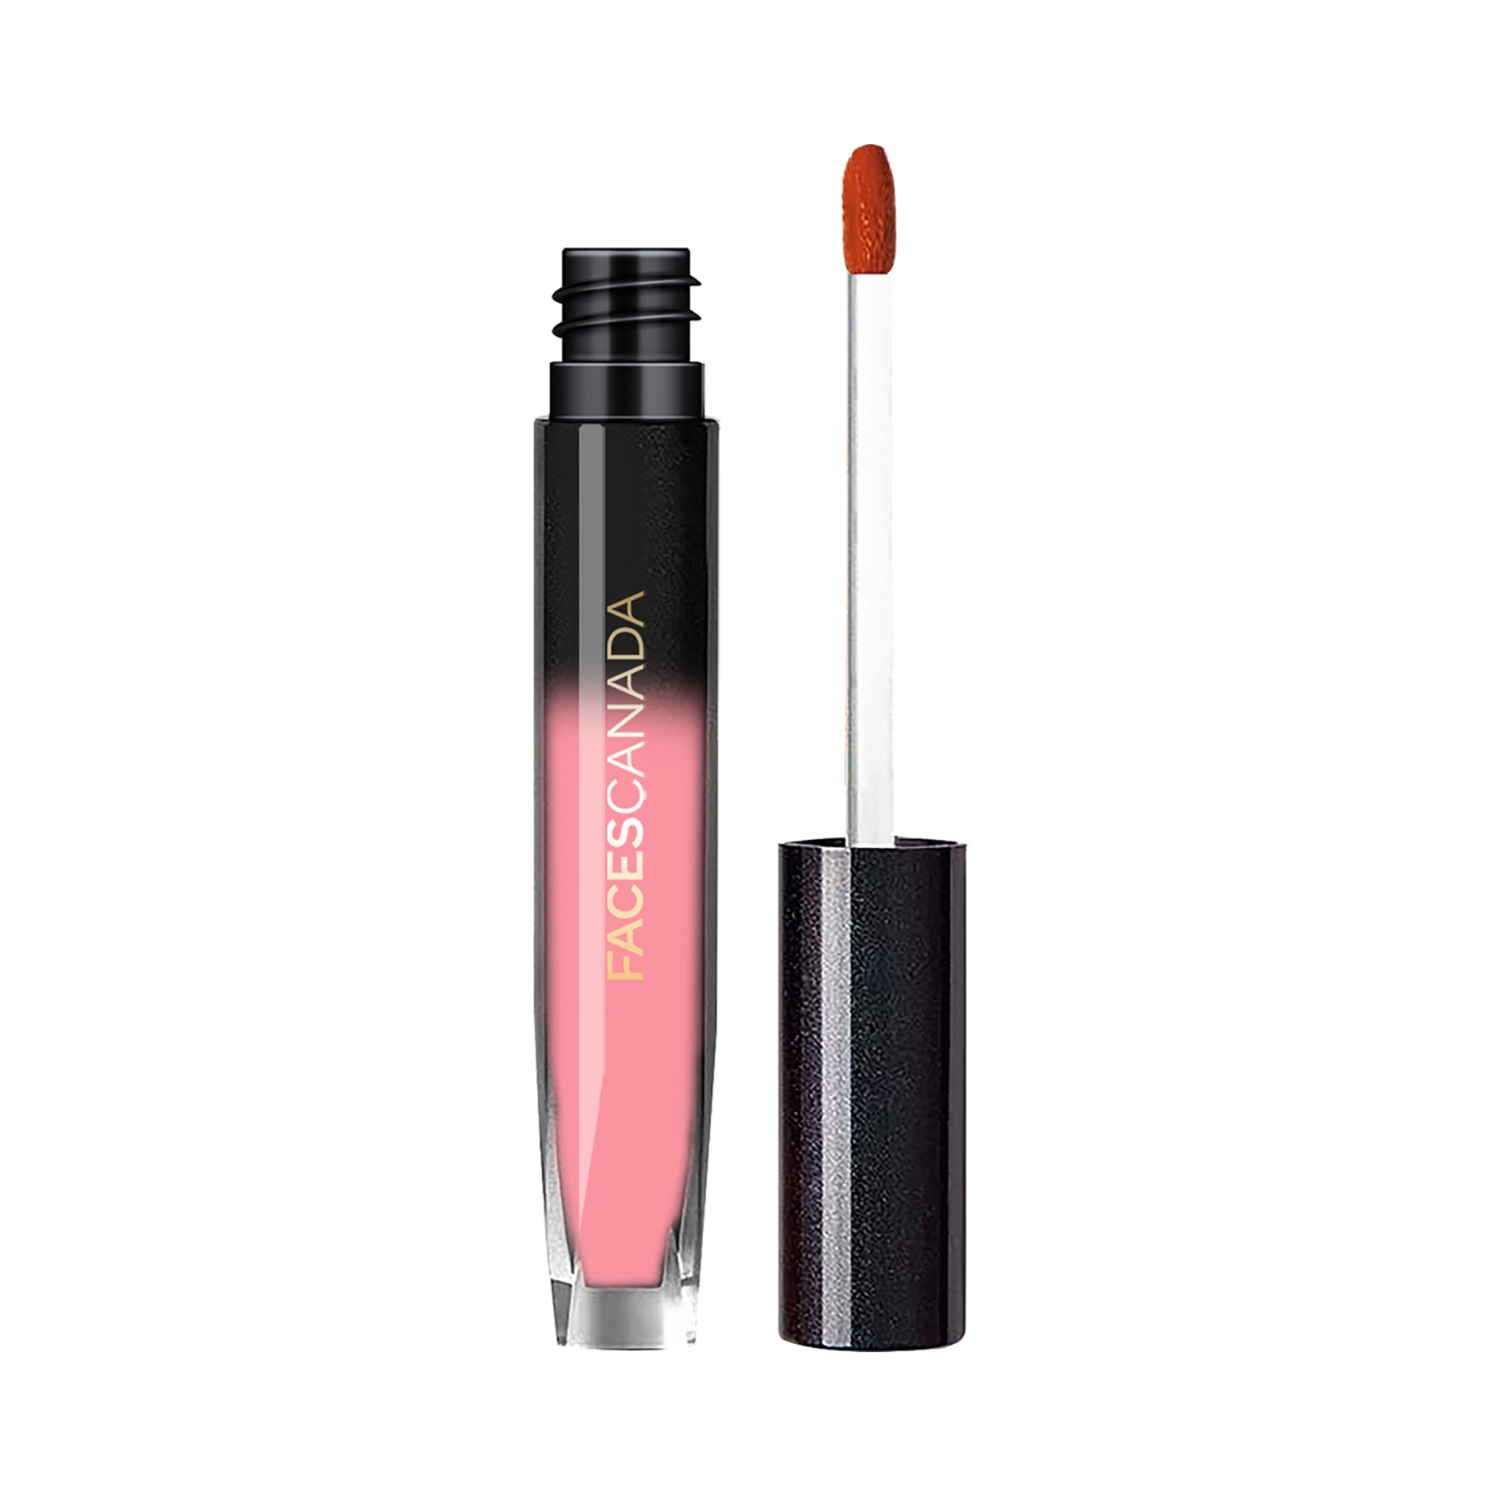 Faces Canada | Faces Canada Comfy Silk Liquid Lipstick - 05 Jovial Pink (4ml)